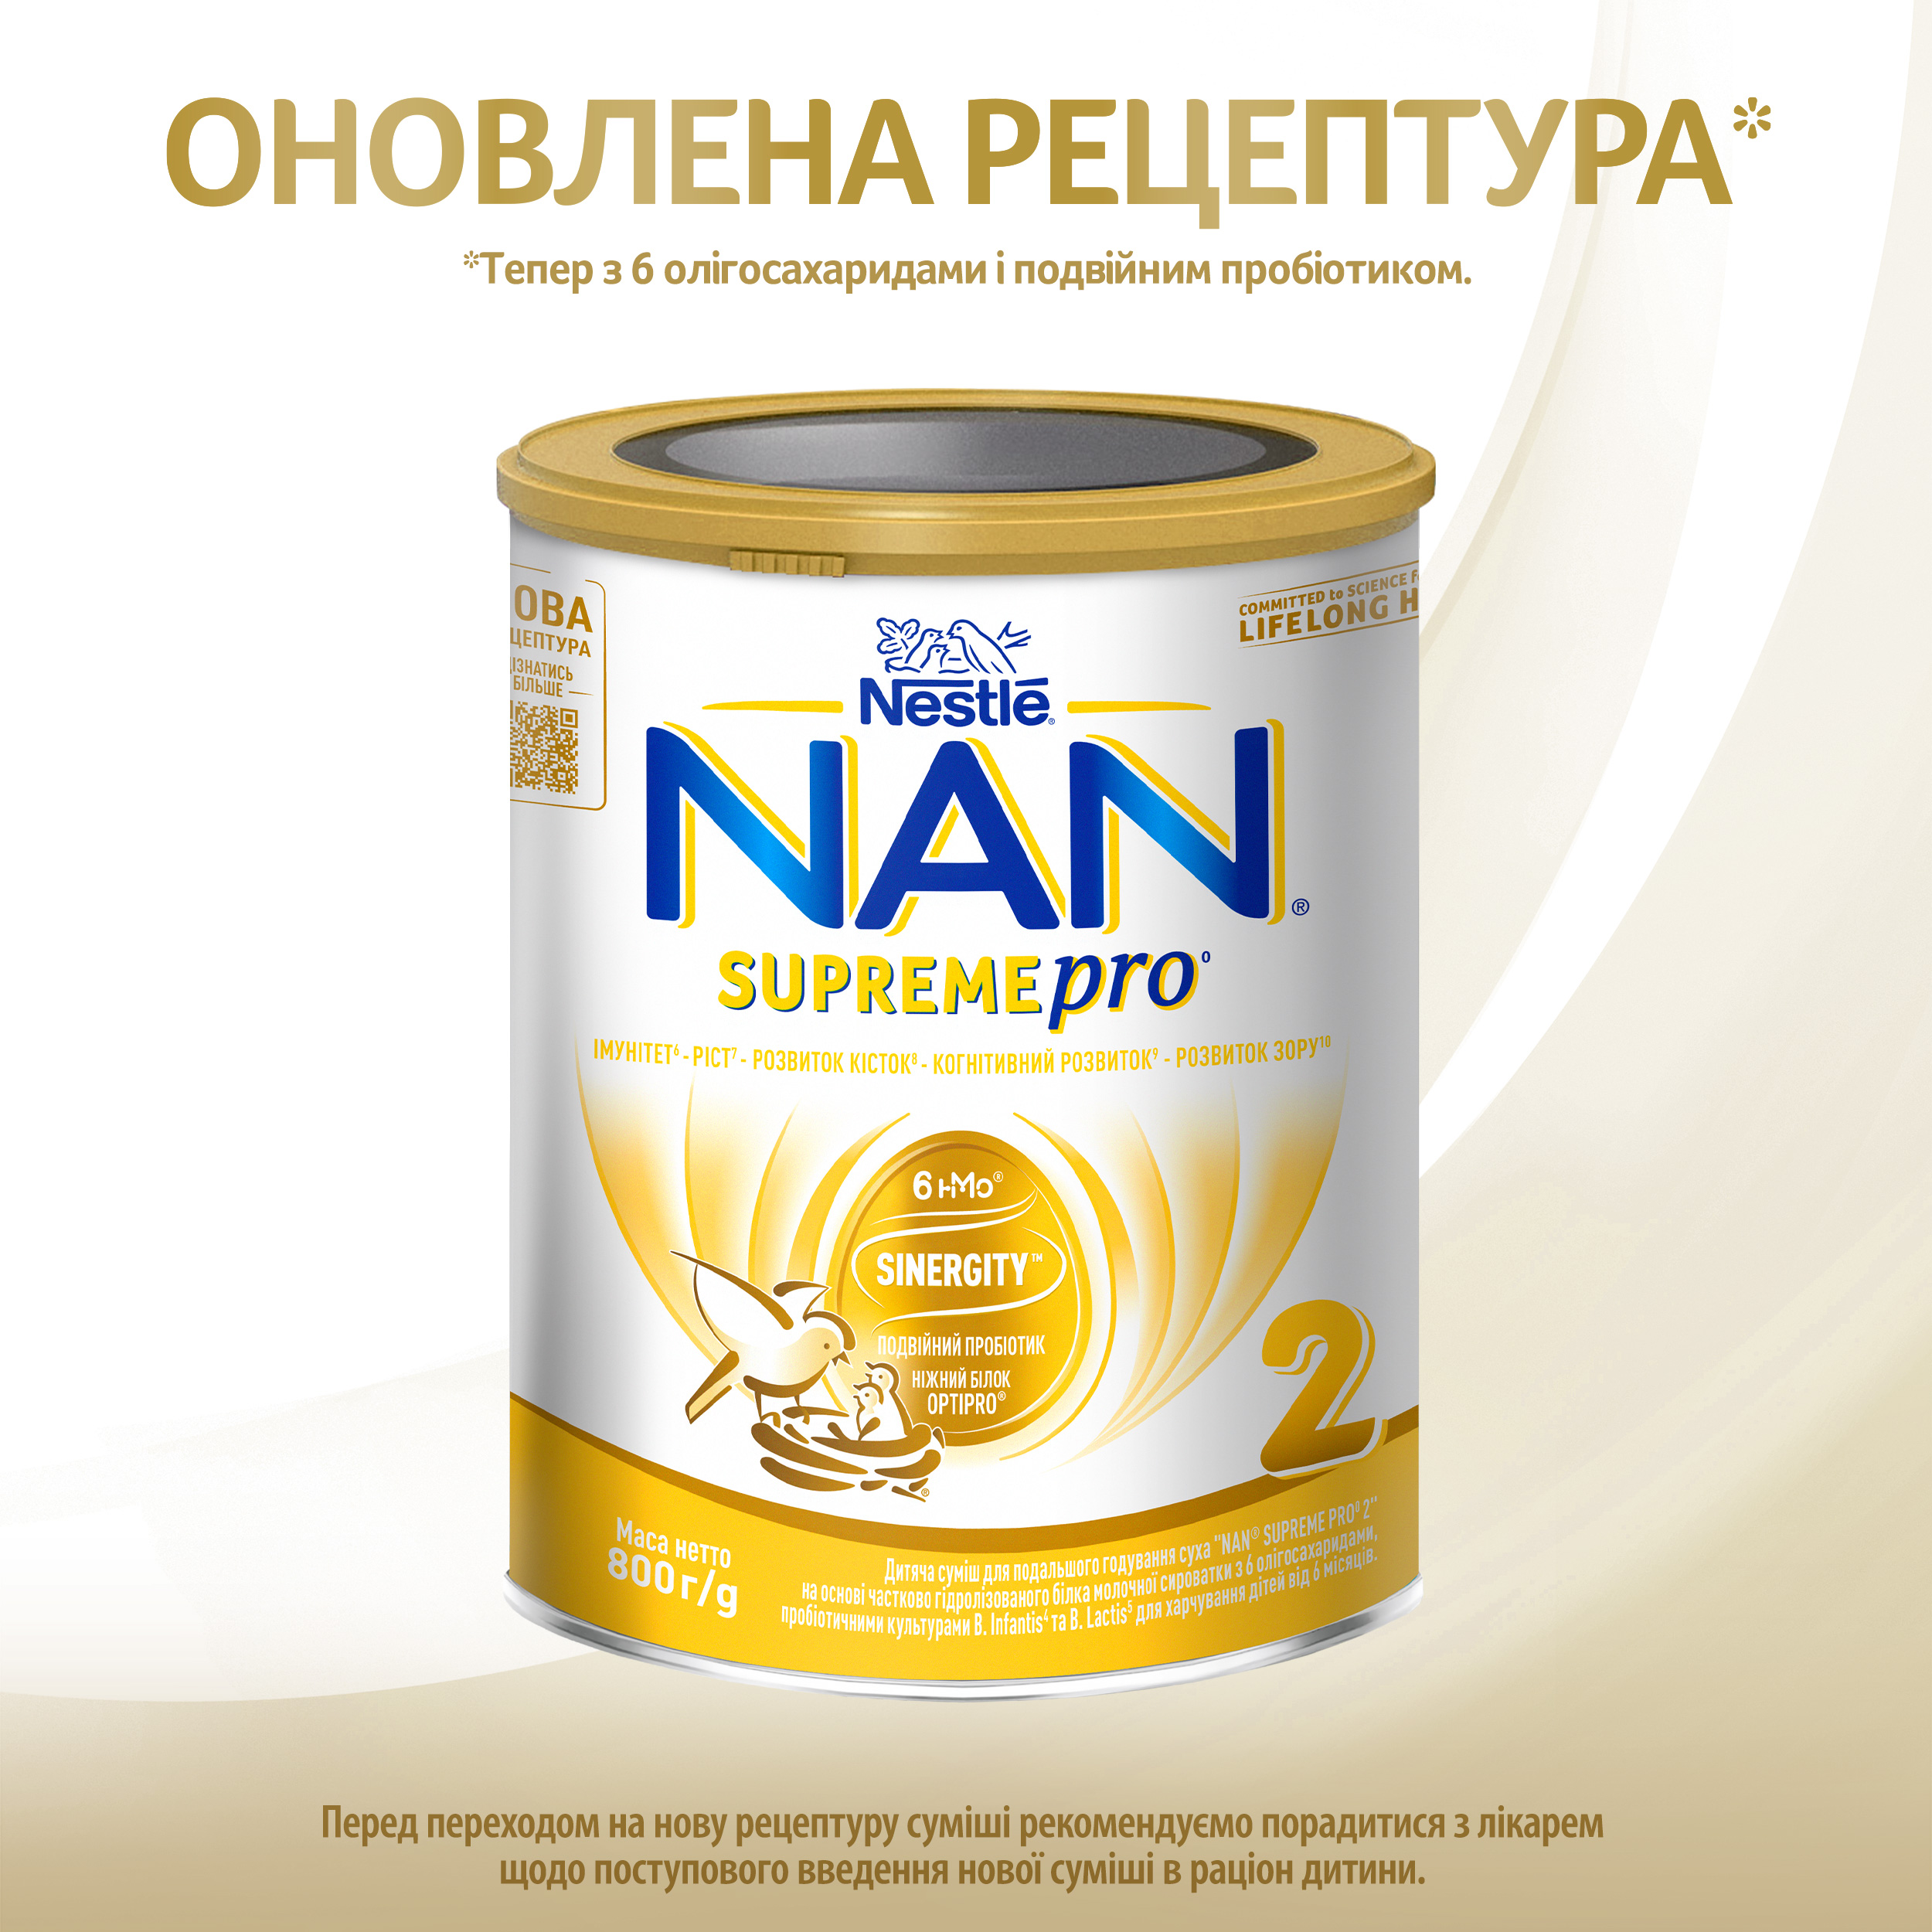 Сухая молочная смесь NAN Supreme Pro 2, с олигосахаридами, 800 г - фото 2